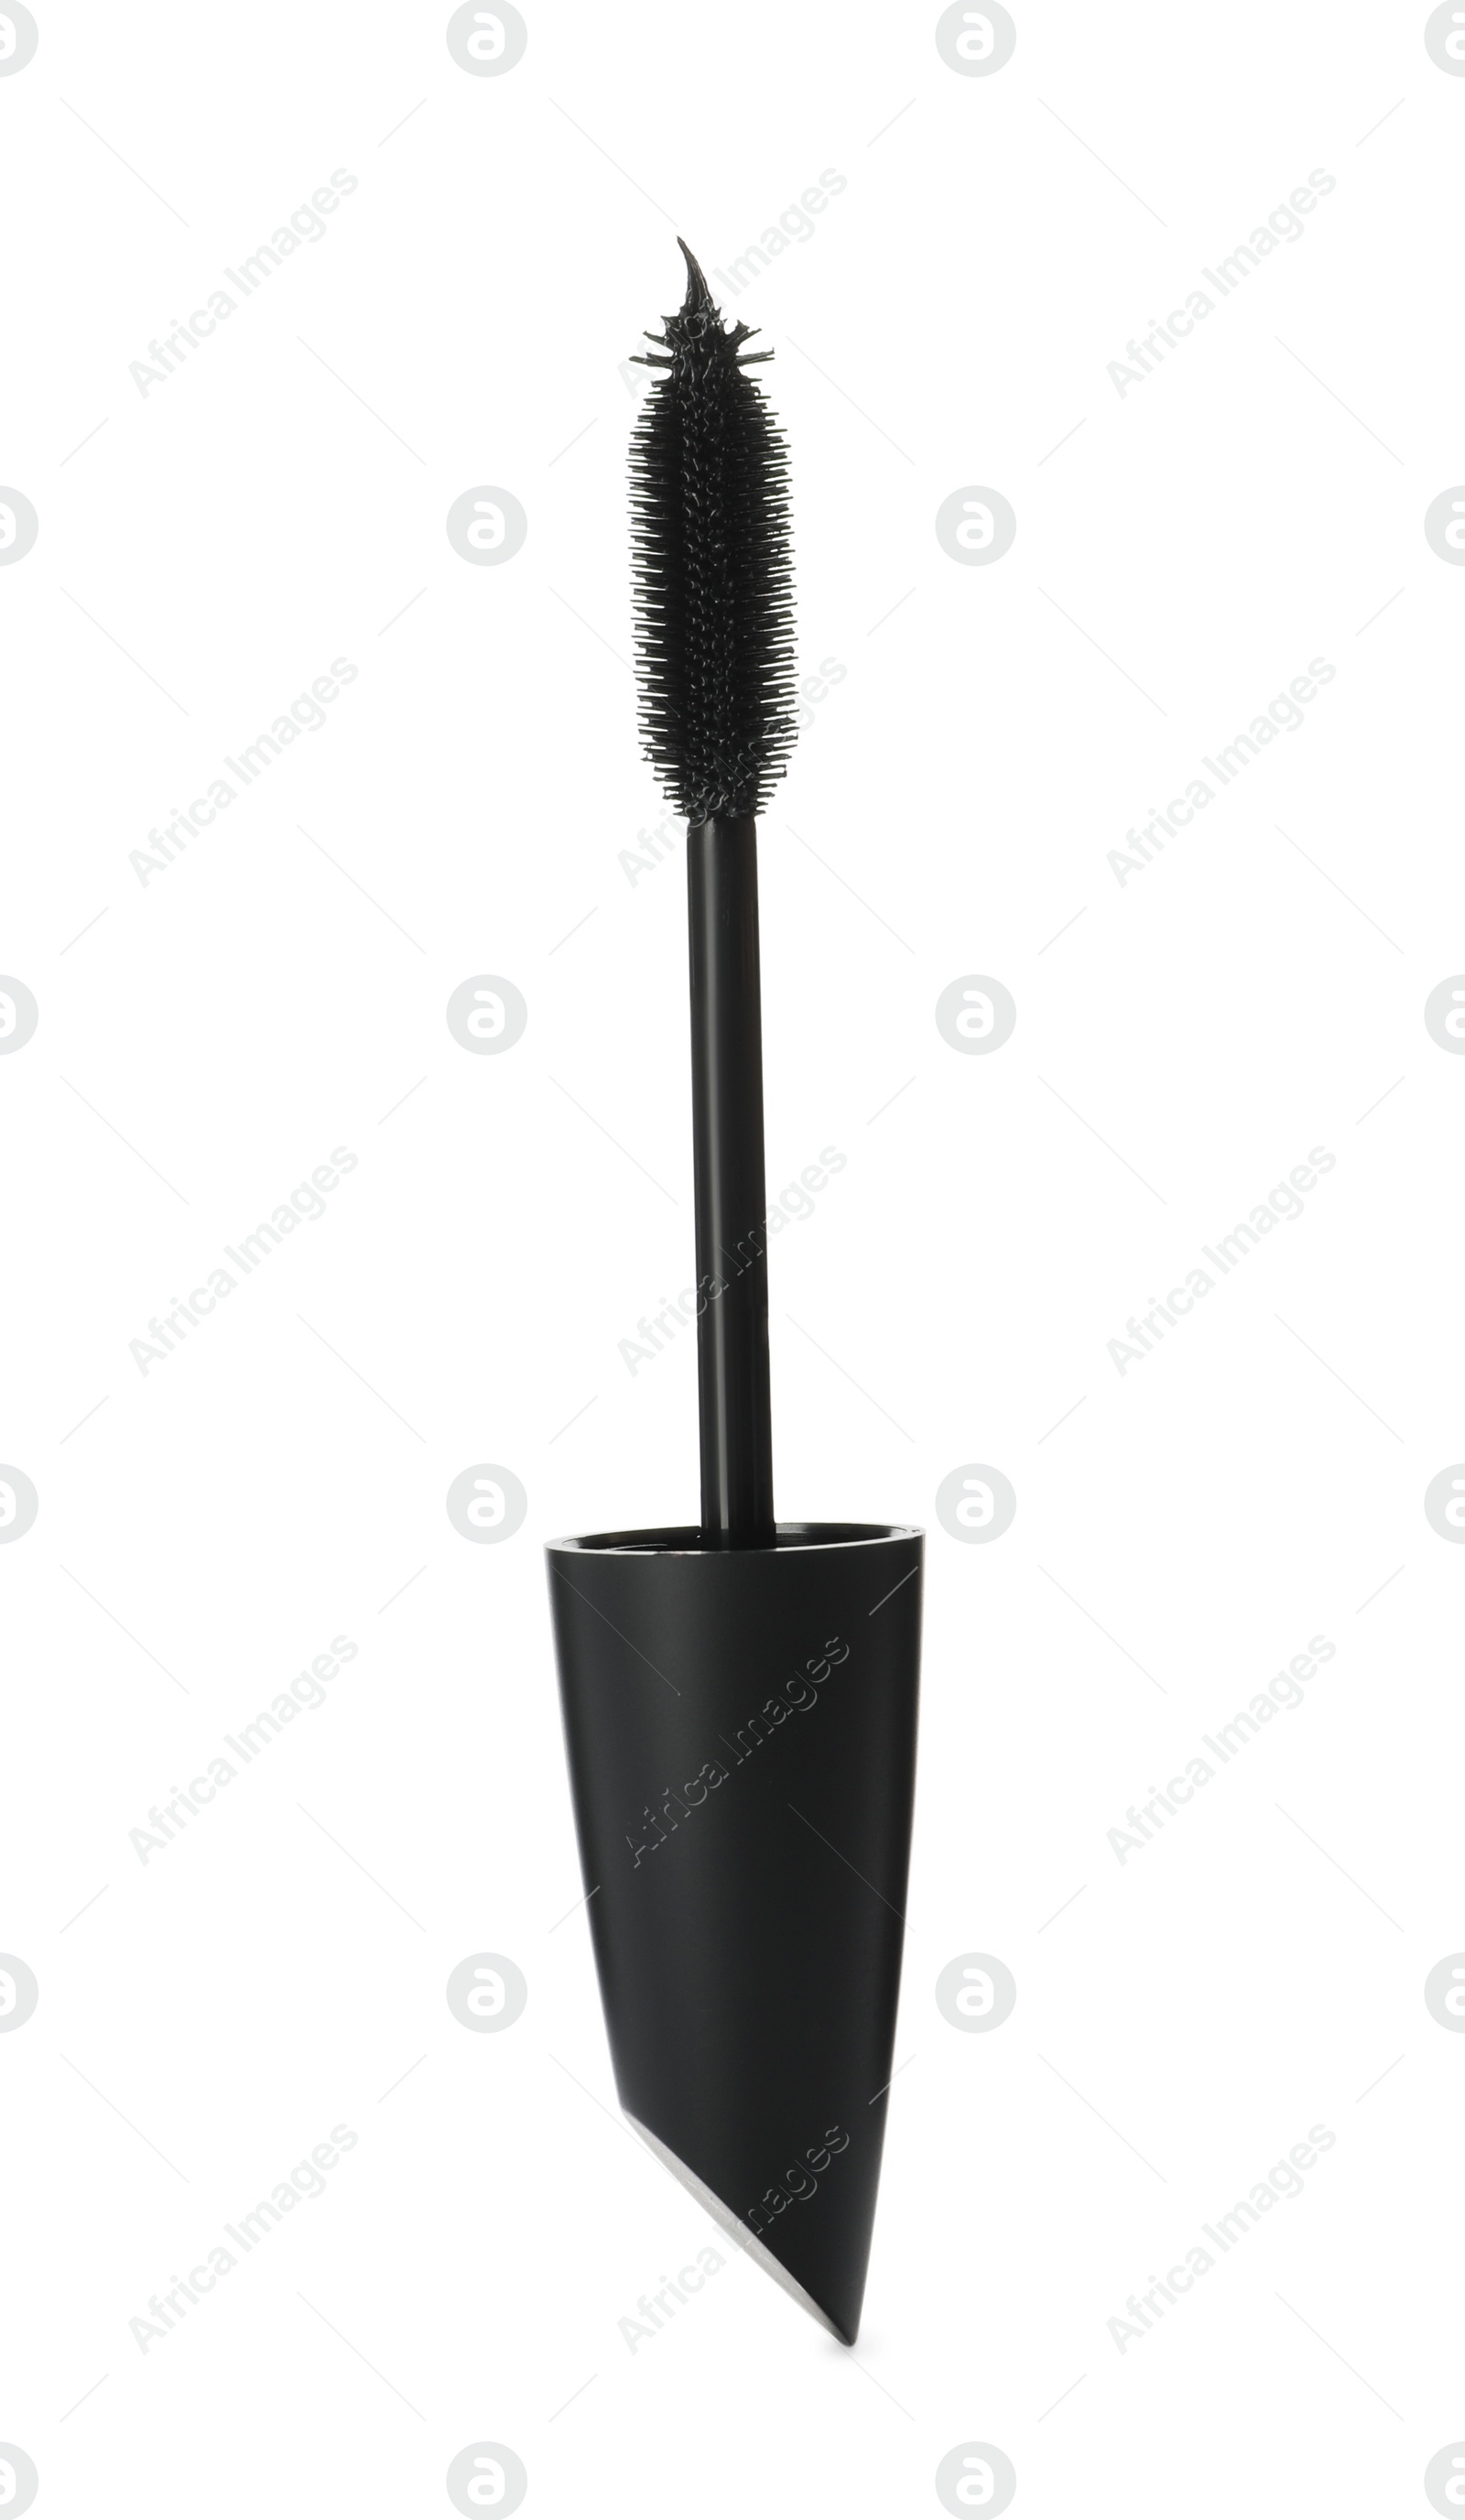 Photo of Mascara wand on white background. Makeup product